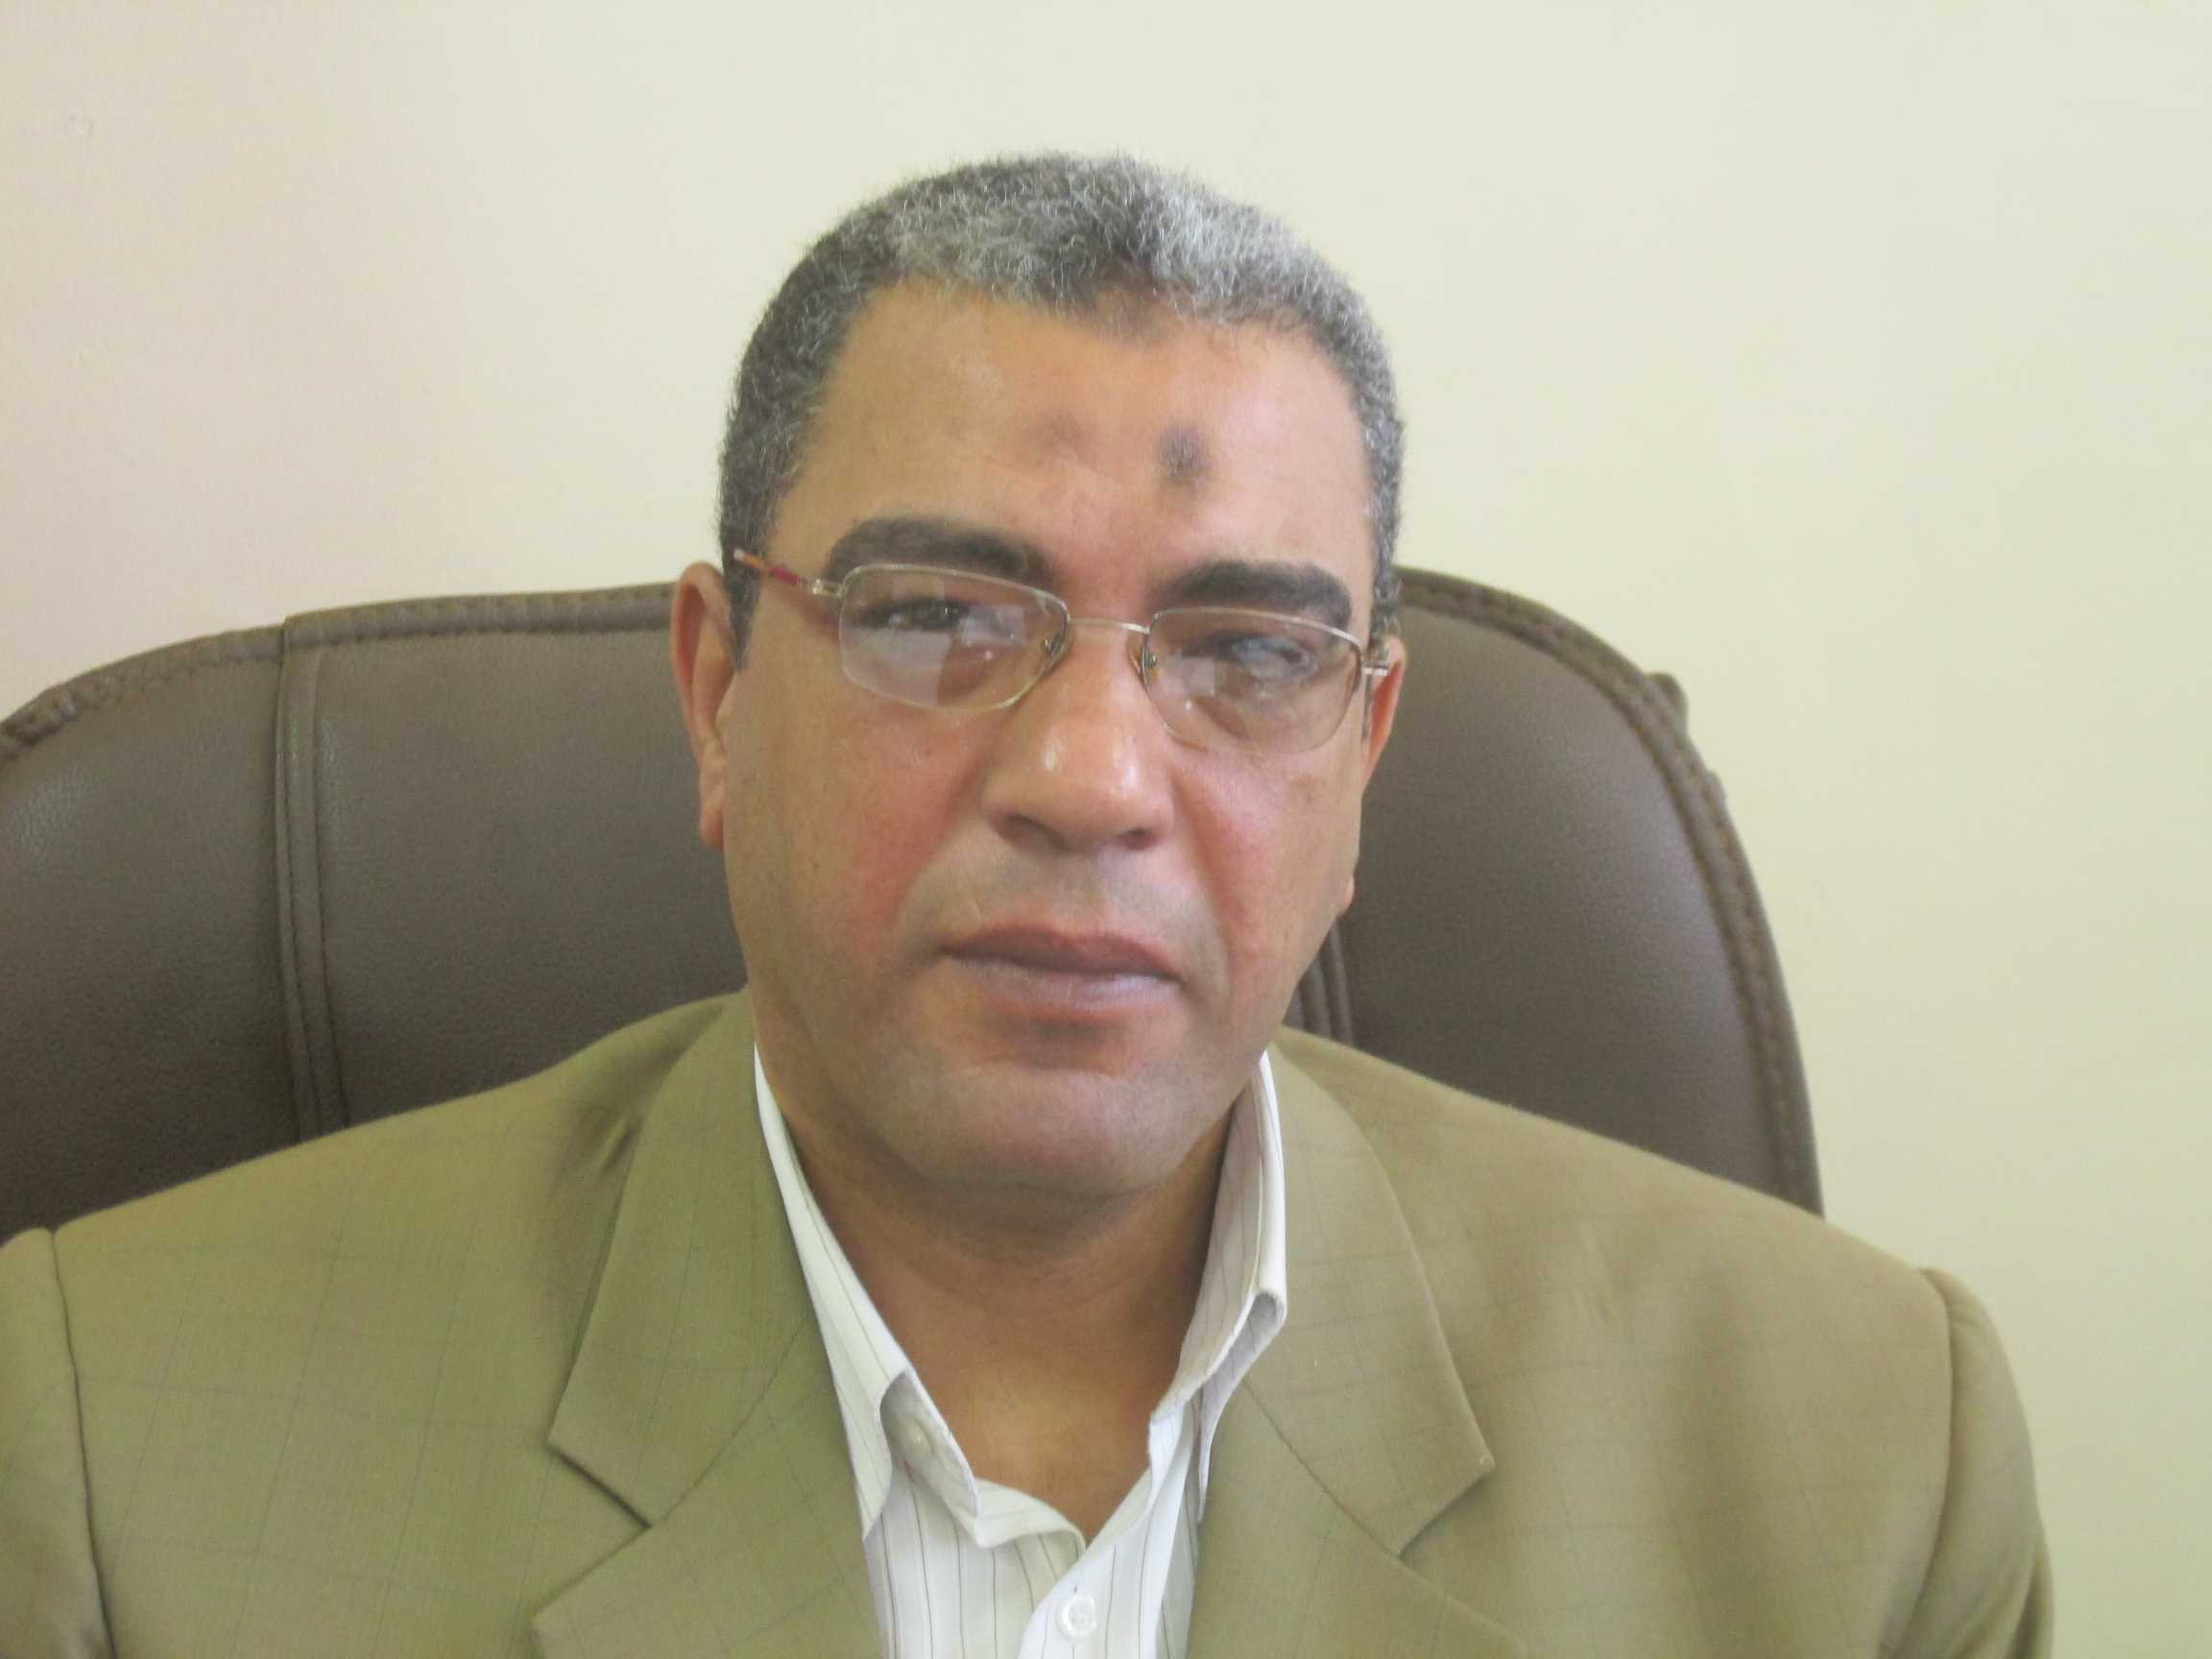 ناصر ثابت وكيل وزارة مديرية التموين والتجارة الداخلية ببورسعيد